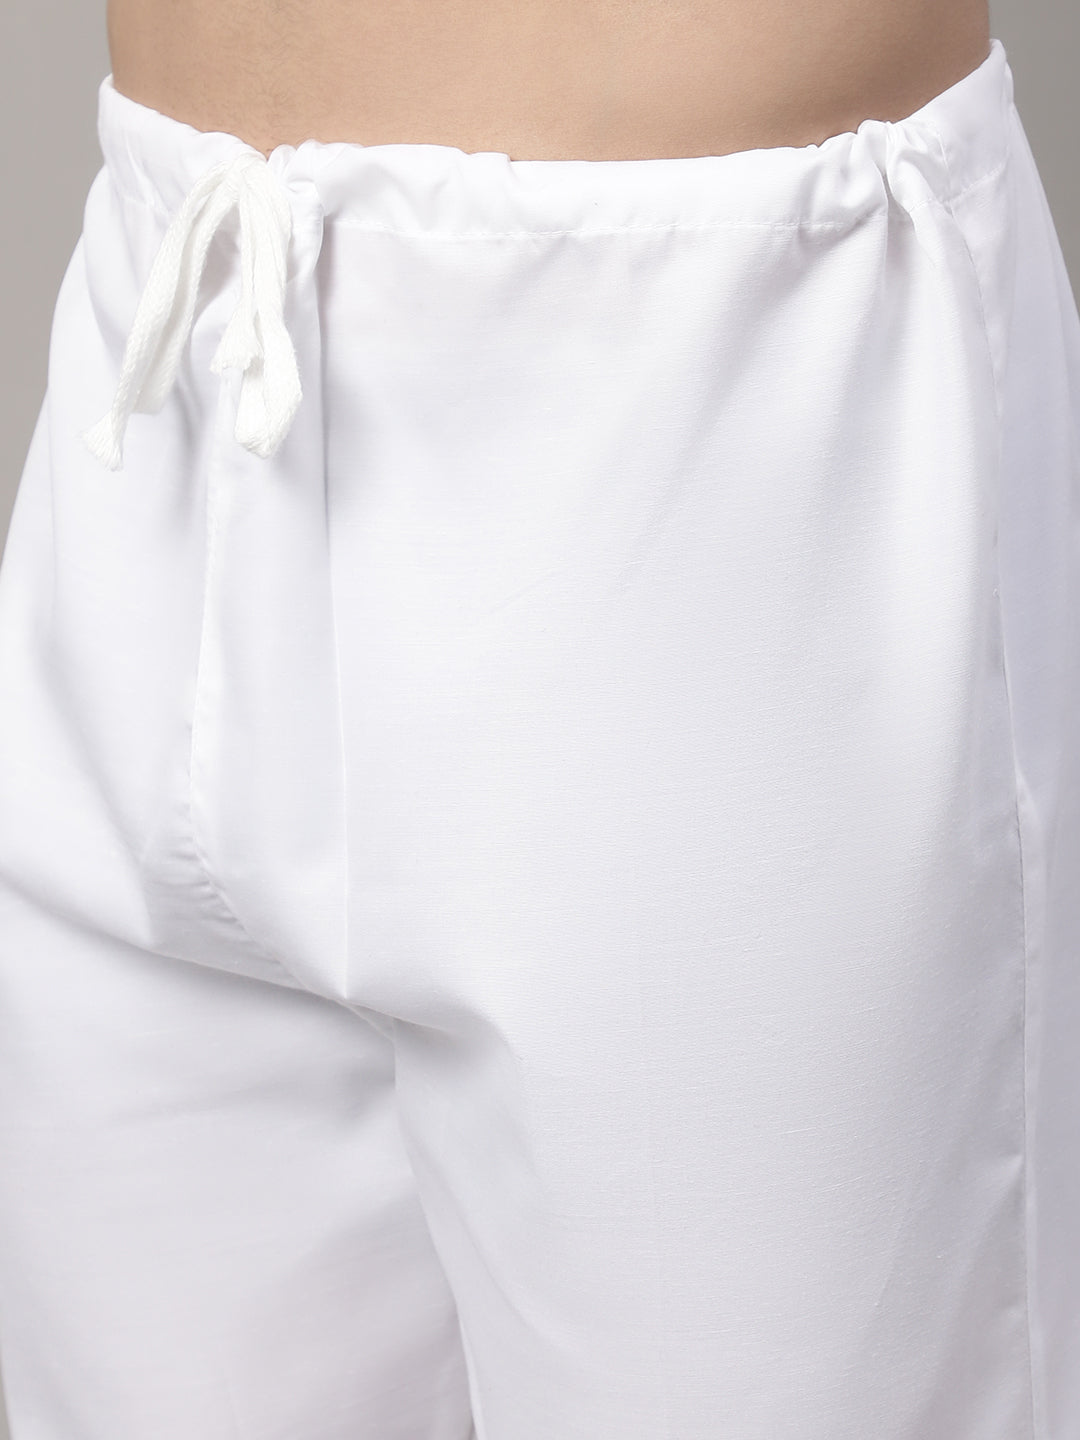 Men's Beige Embroidered Kurta Pyjama With Woven Design Nehru Jacket